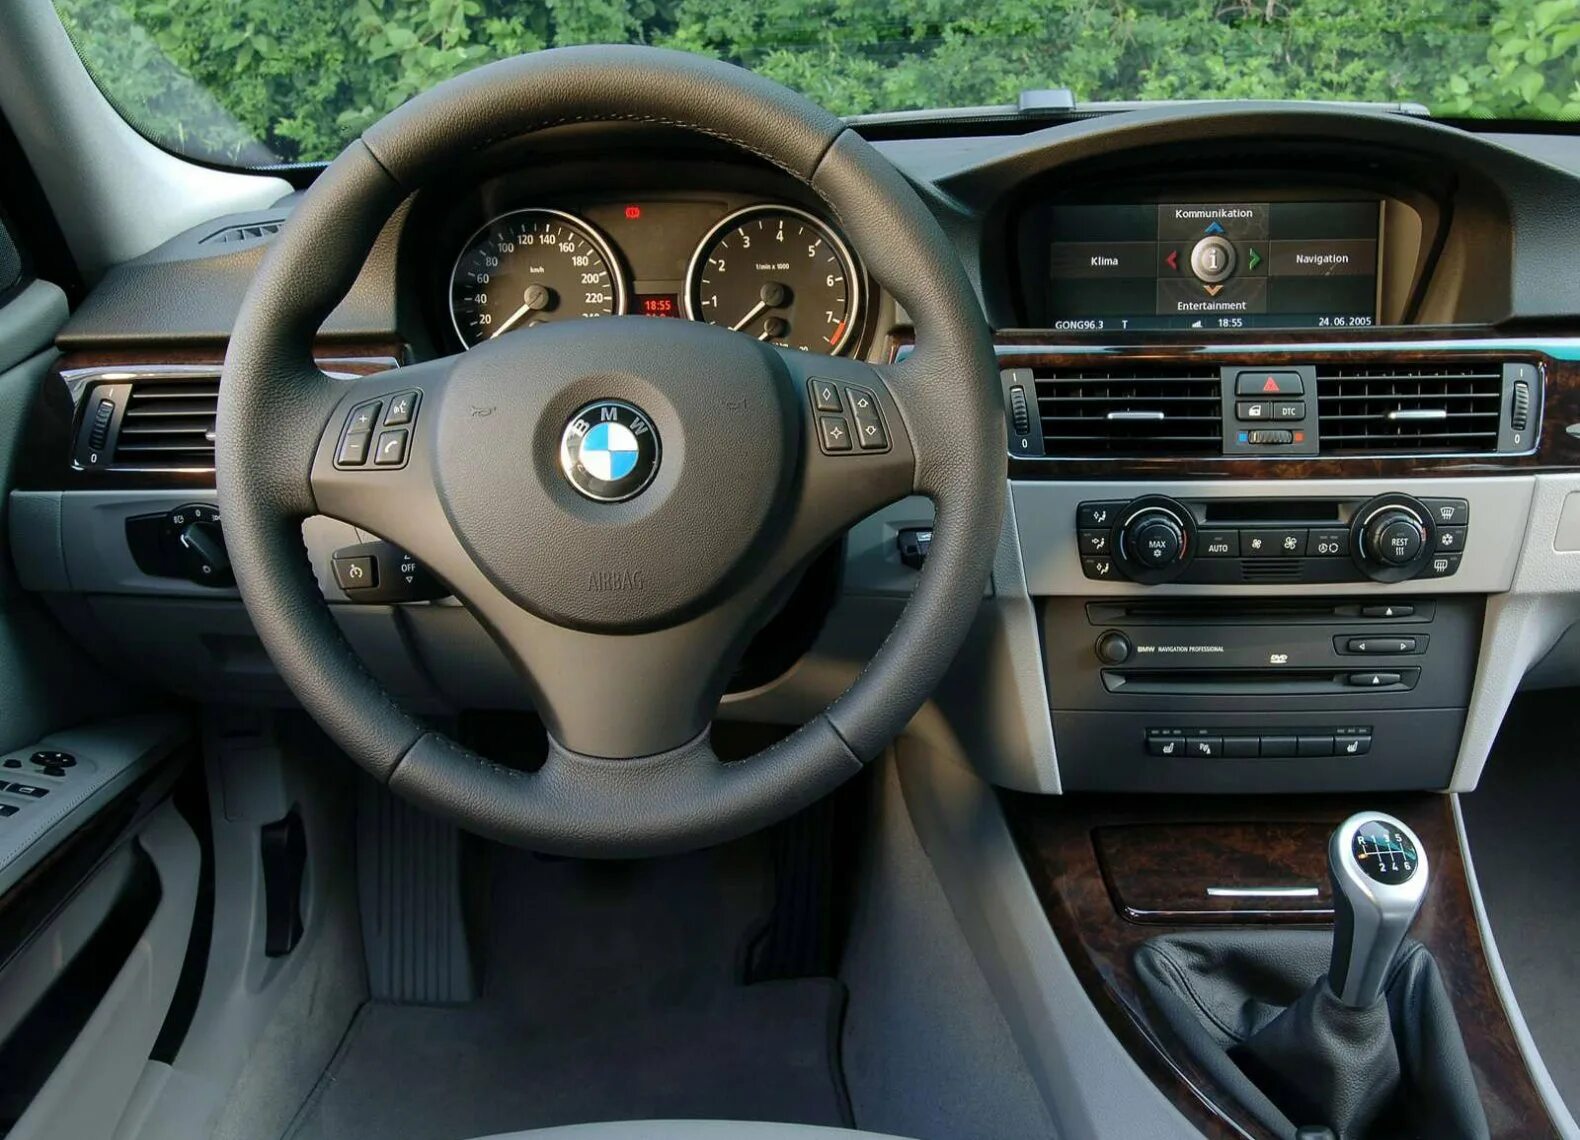 BMW 325i салон. BMW 525i салон. BMW 325 салон. BMW 325i e90.